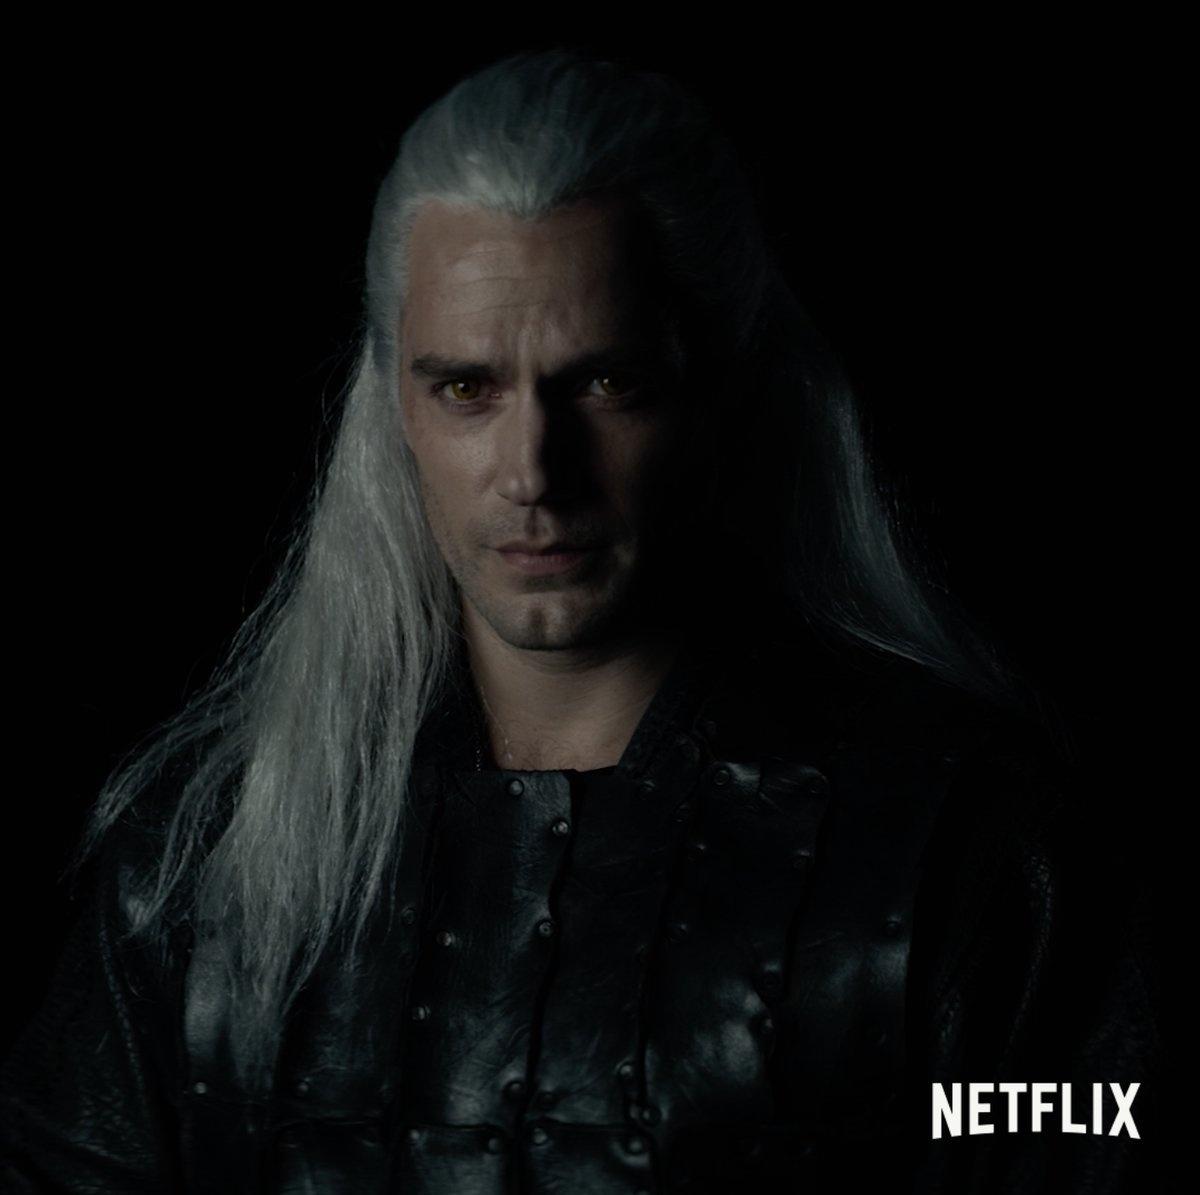 Universo The Witcher - A Netflix revelou adições ao elenco da